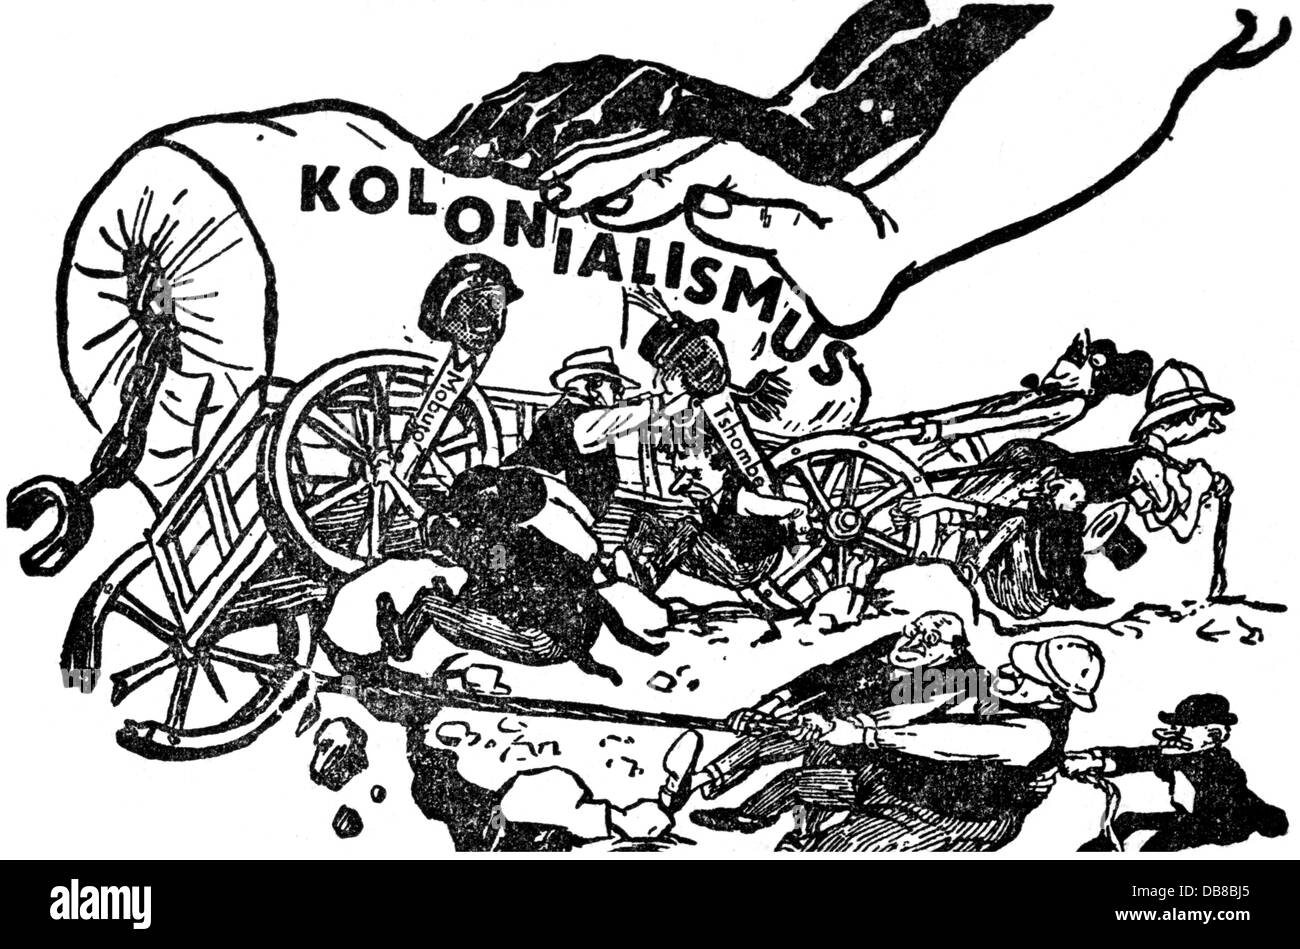 Kolonialismus, 'der Karren am Abgrund', Zeichnung, aus: 'Trud', Moskau, 1961, Additional-Rights-Clearences-not available Stockfoto